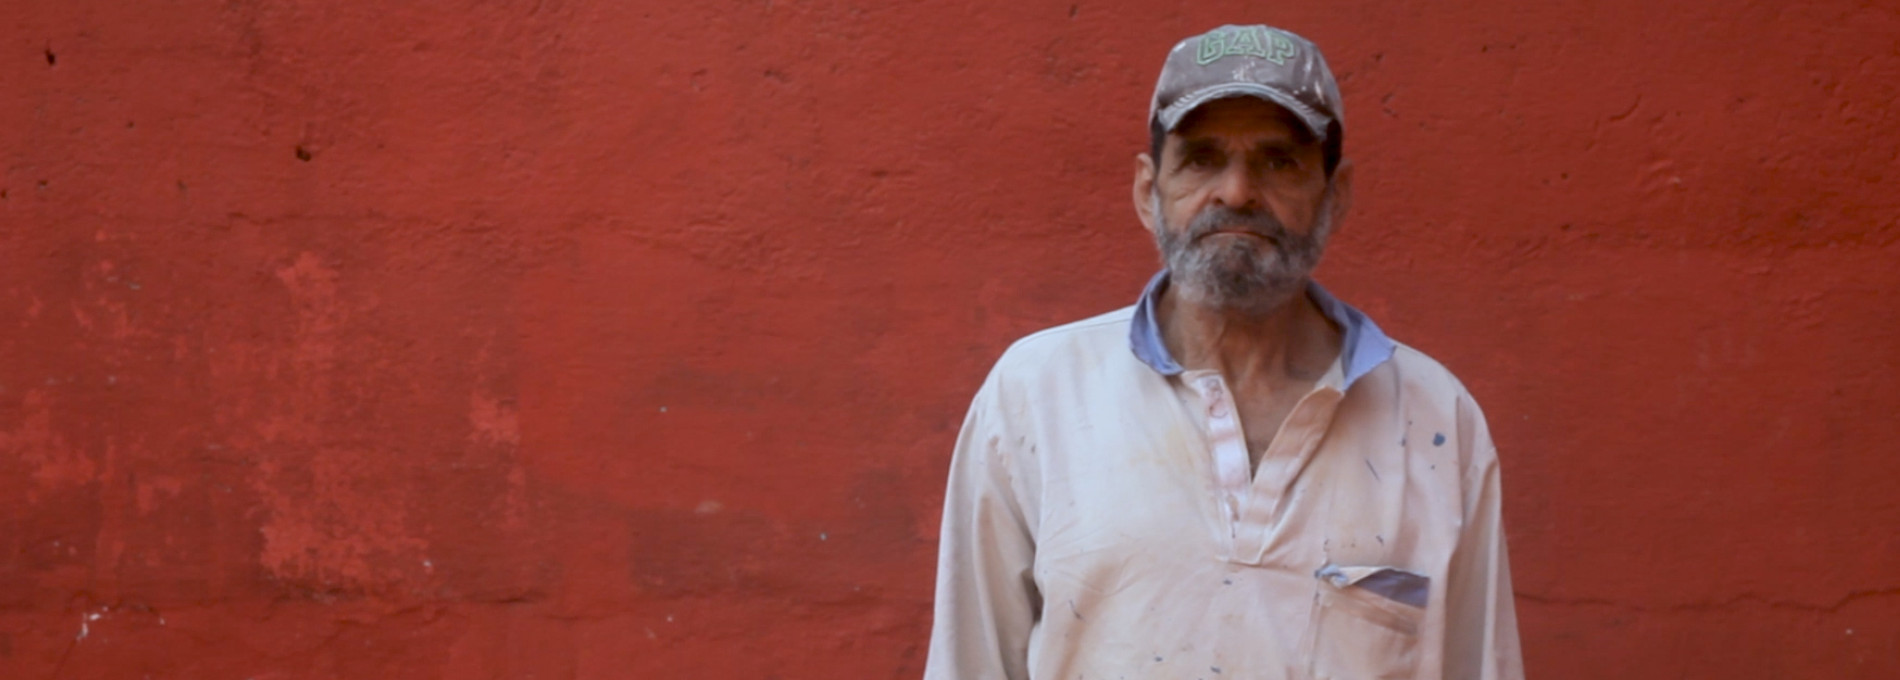 Miguel Batista, o pedreiro cineasta